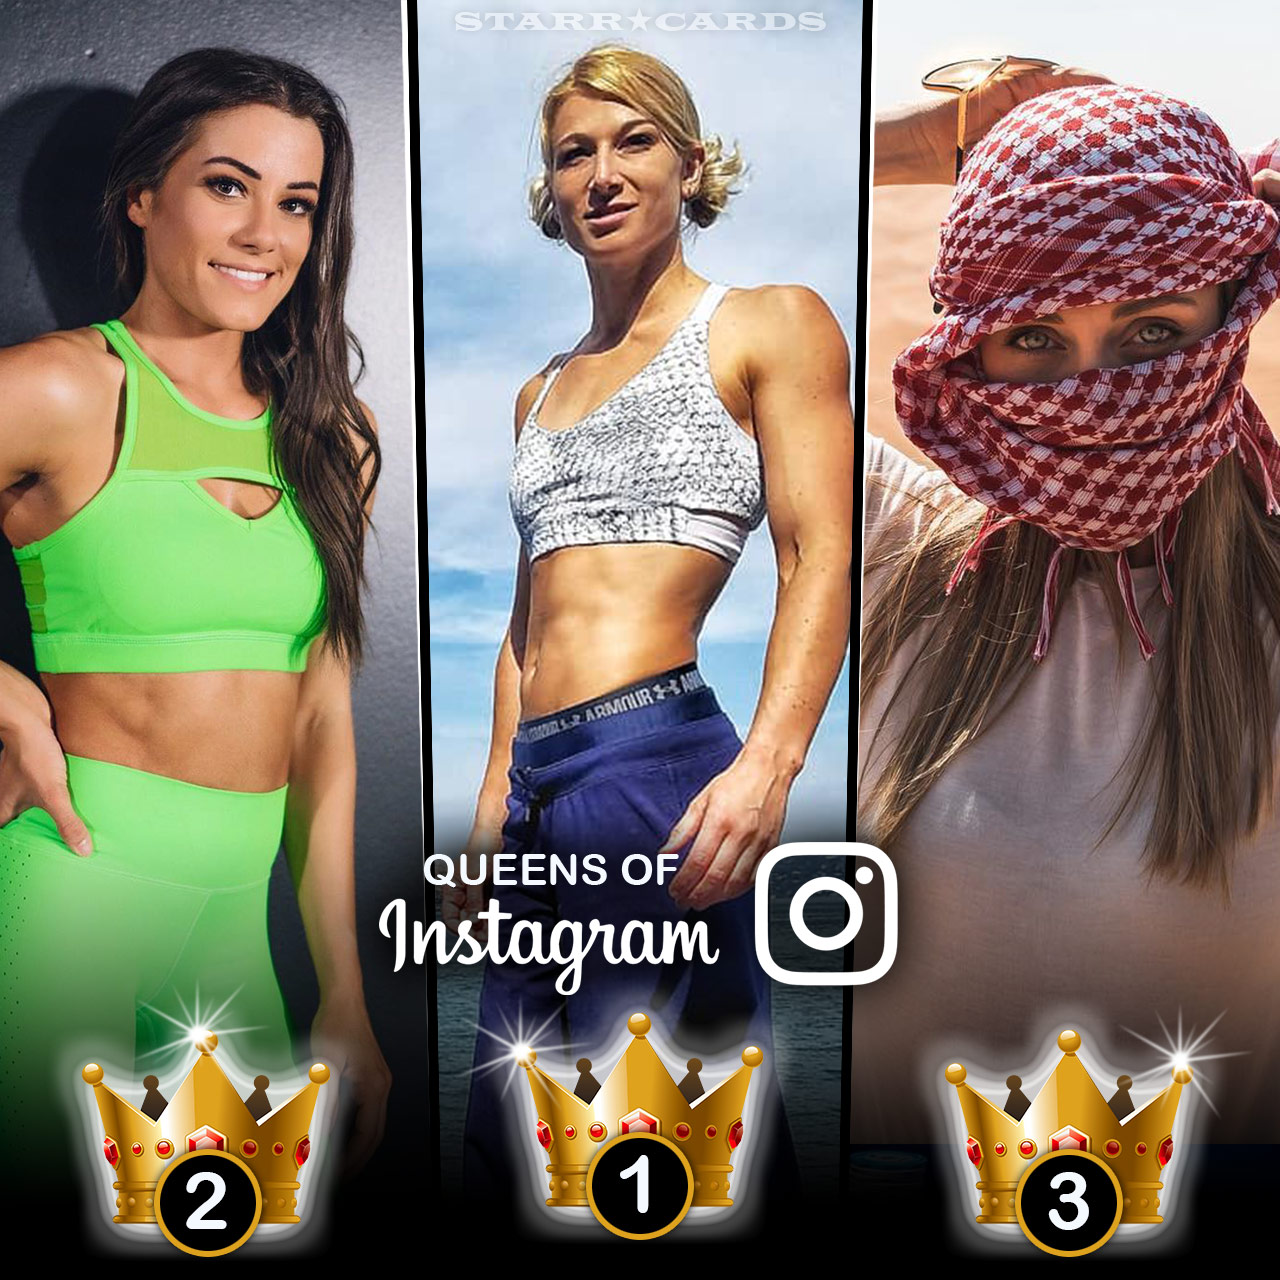 Queens of Ninja Warrior: Jesse Graff, Kacy Catanzaro, Katie McDonnell tops on Instagram